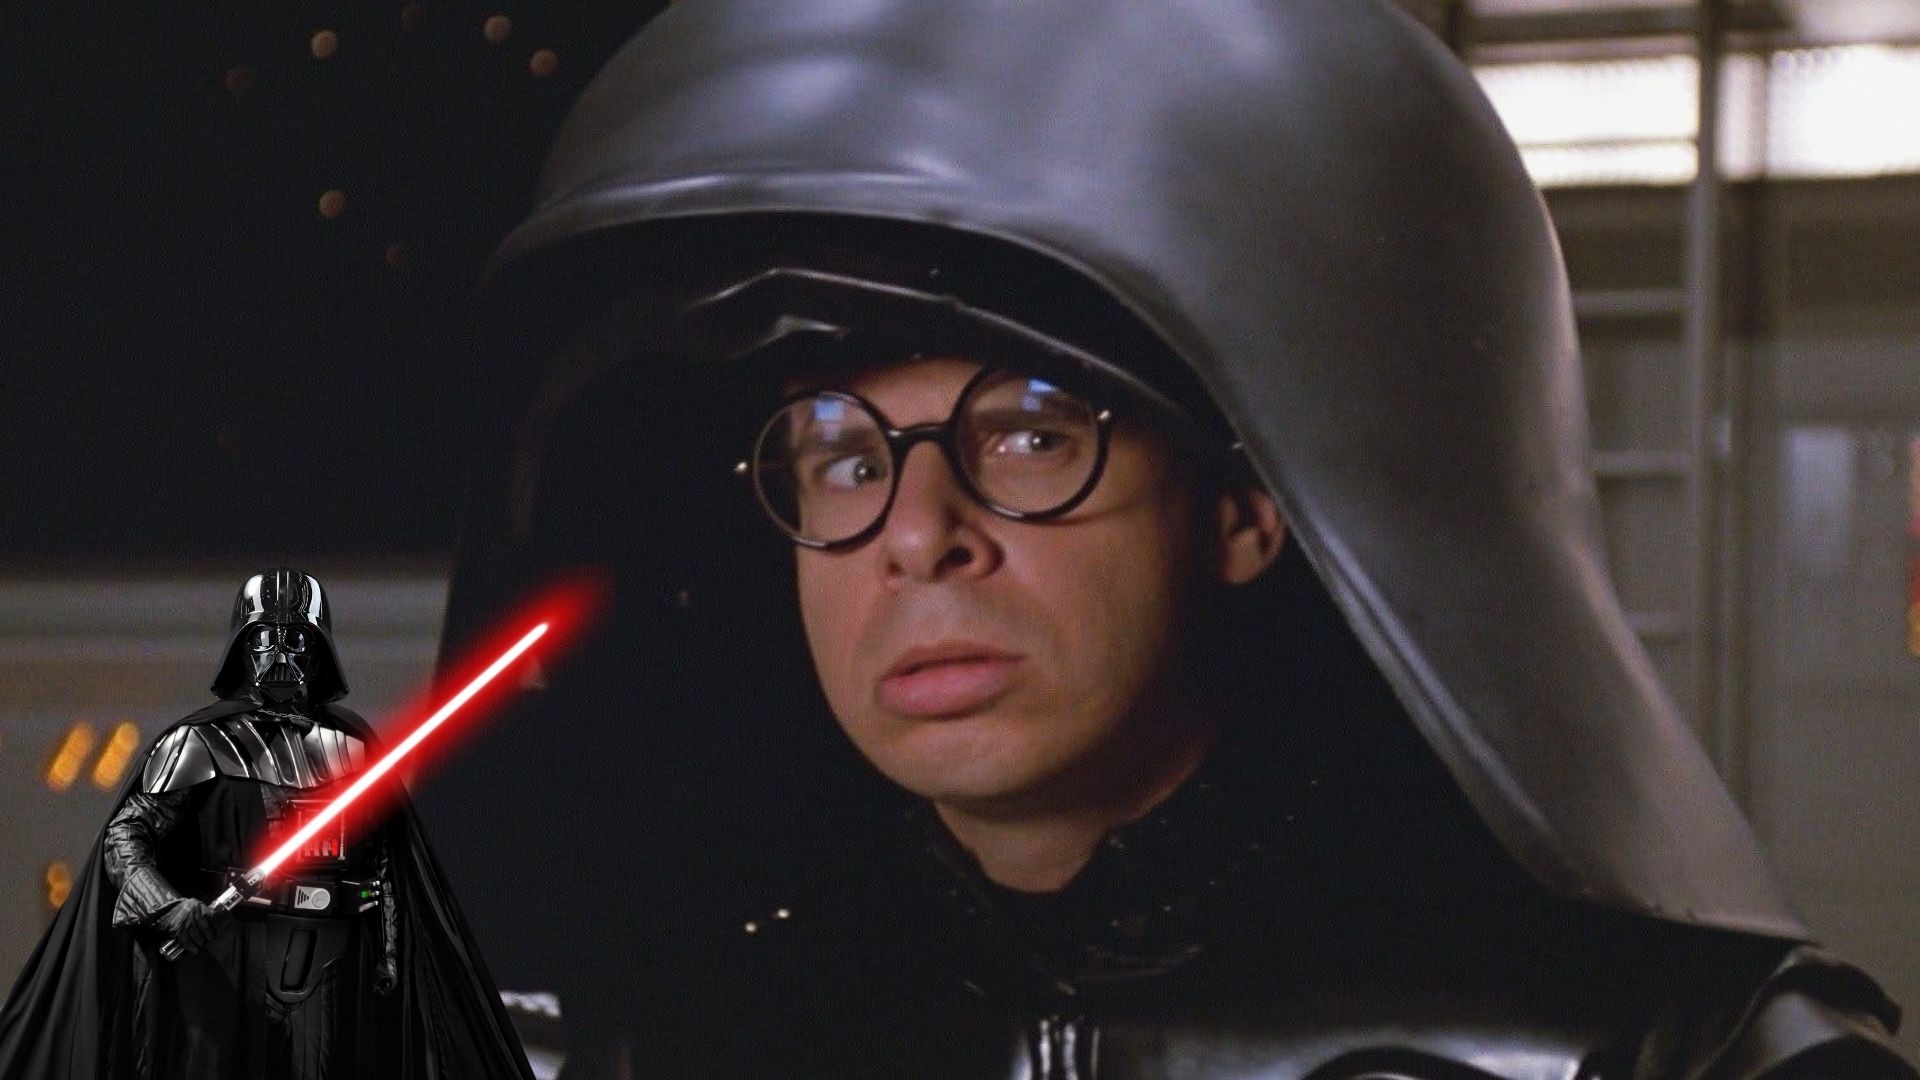 Darth Vader and dark helmet